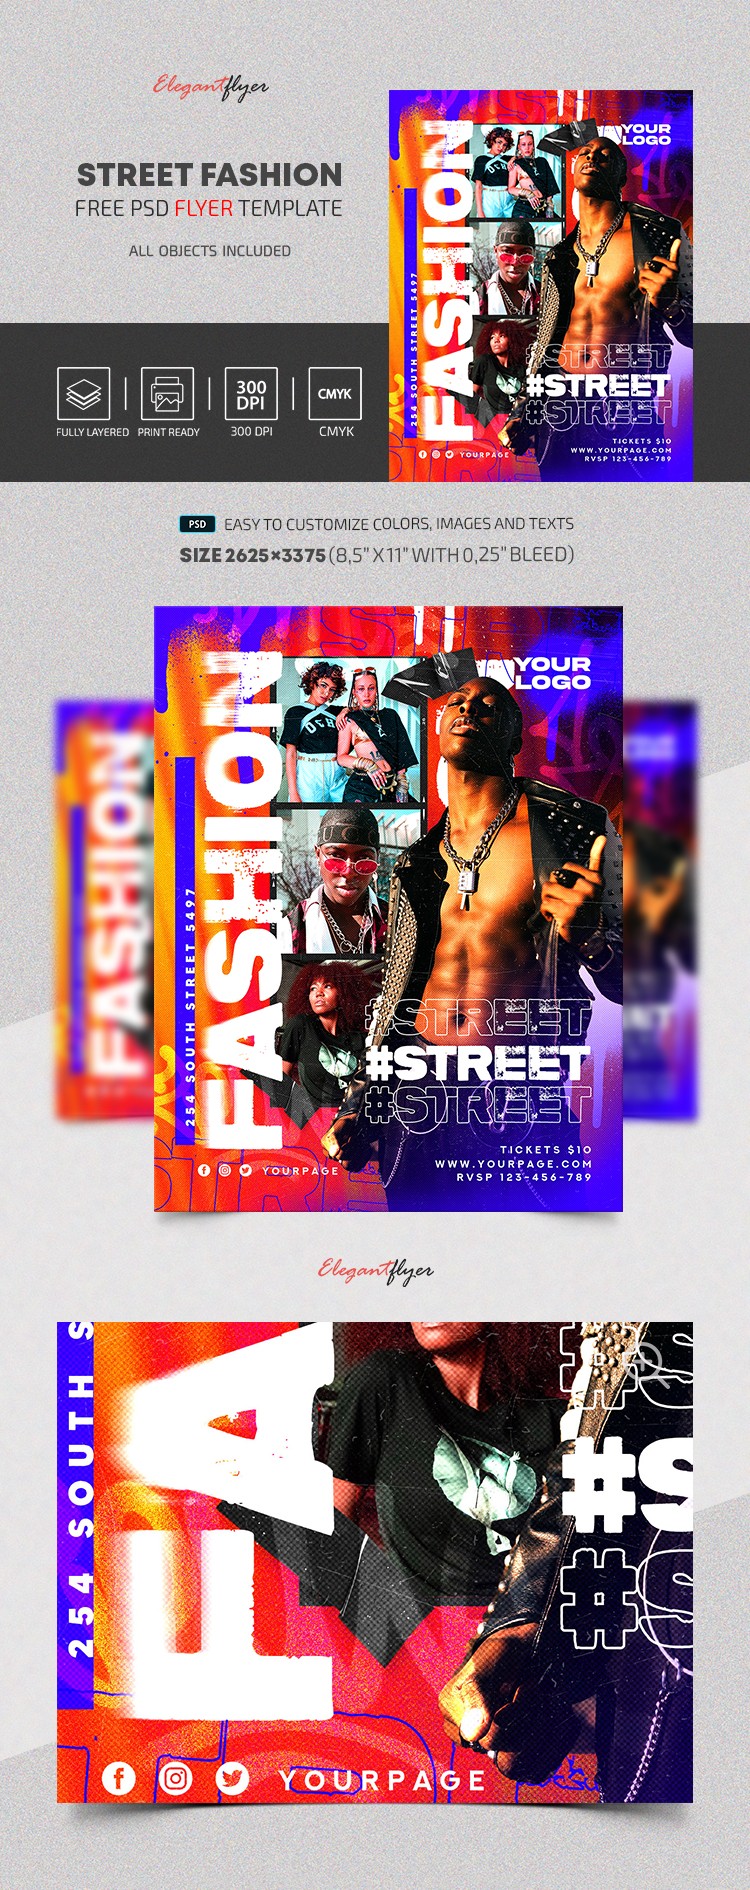 Street Fashion Flyer by ElegantFlyer